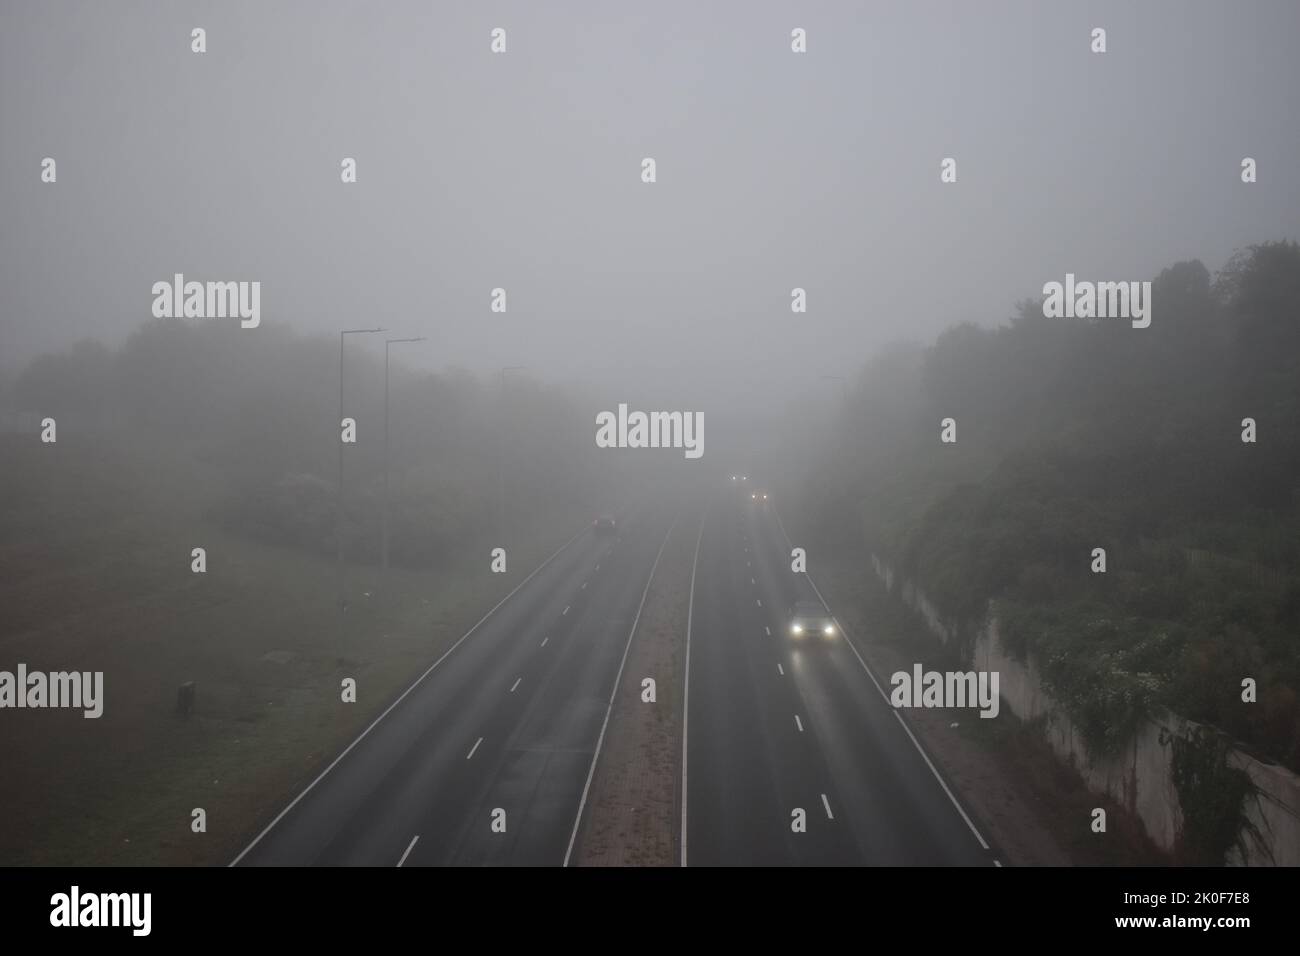 Dual carriageway on the B4034, V8 Marlborough Street in Milton Keynes on a foggy day. Stock Photo